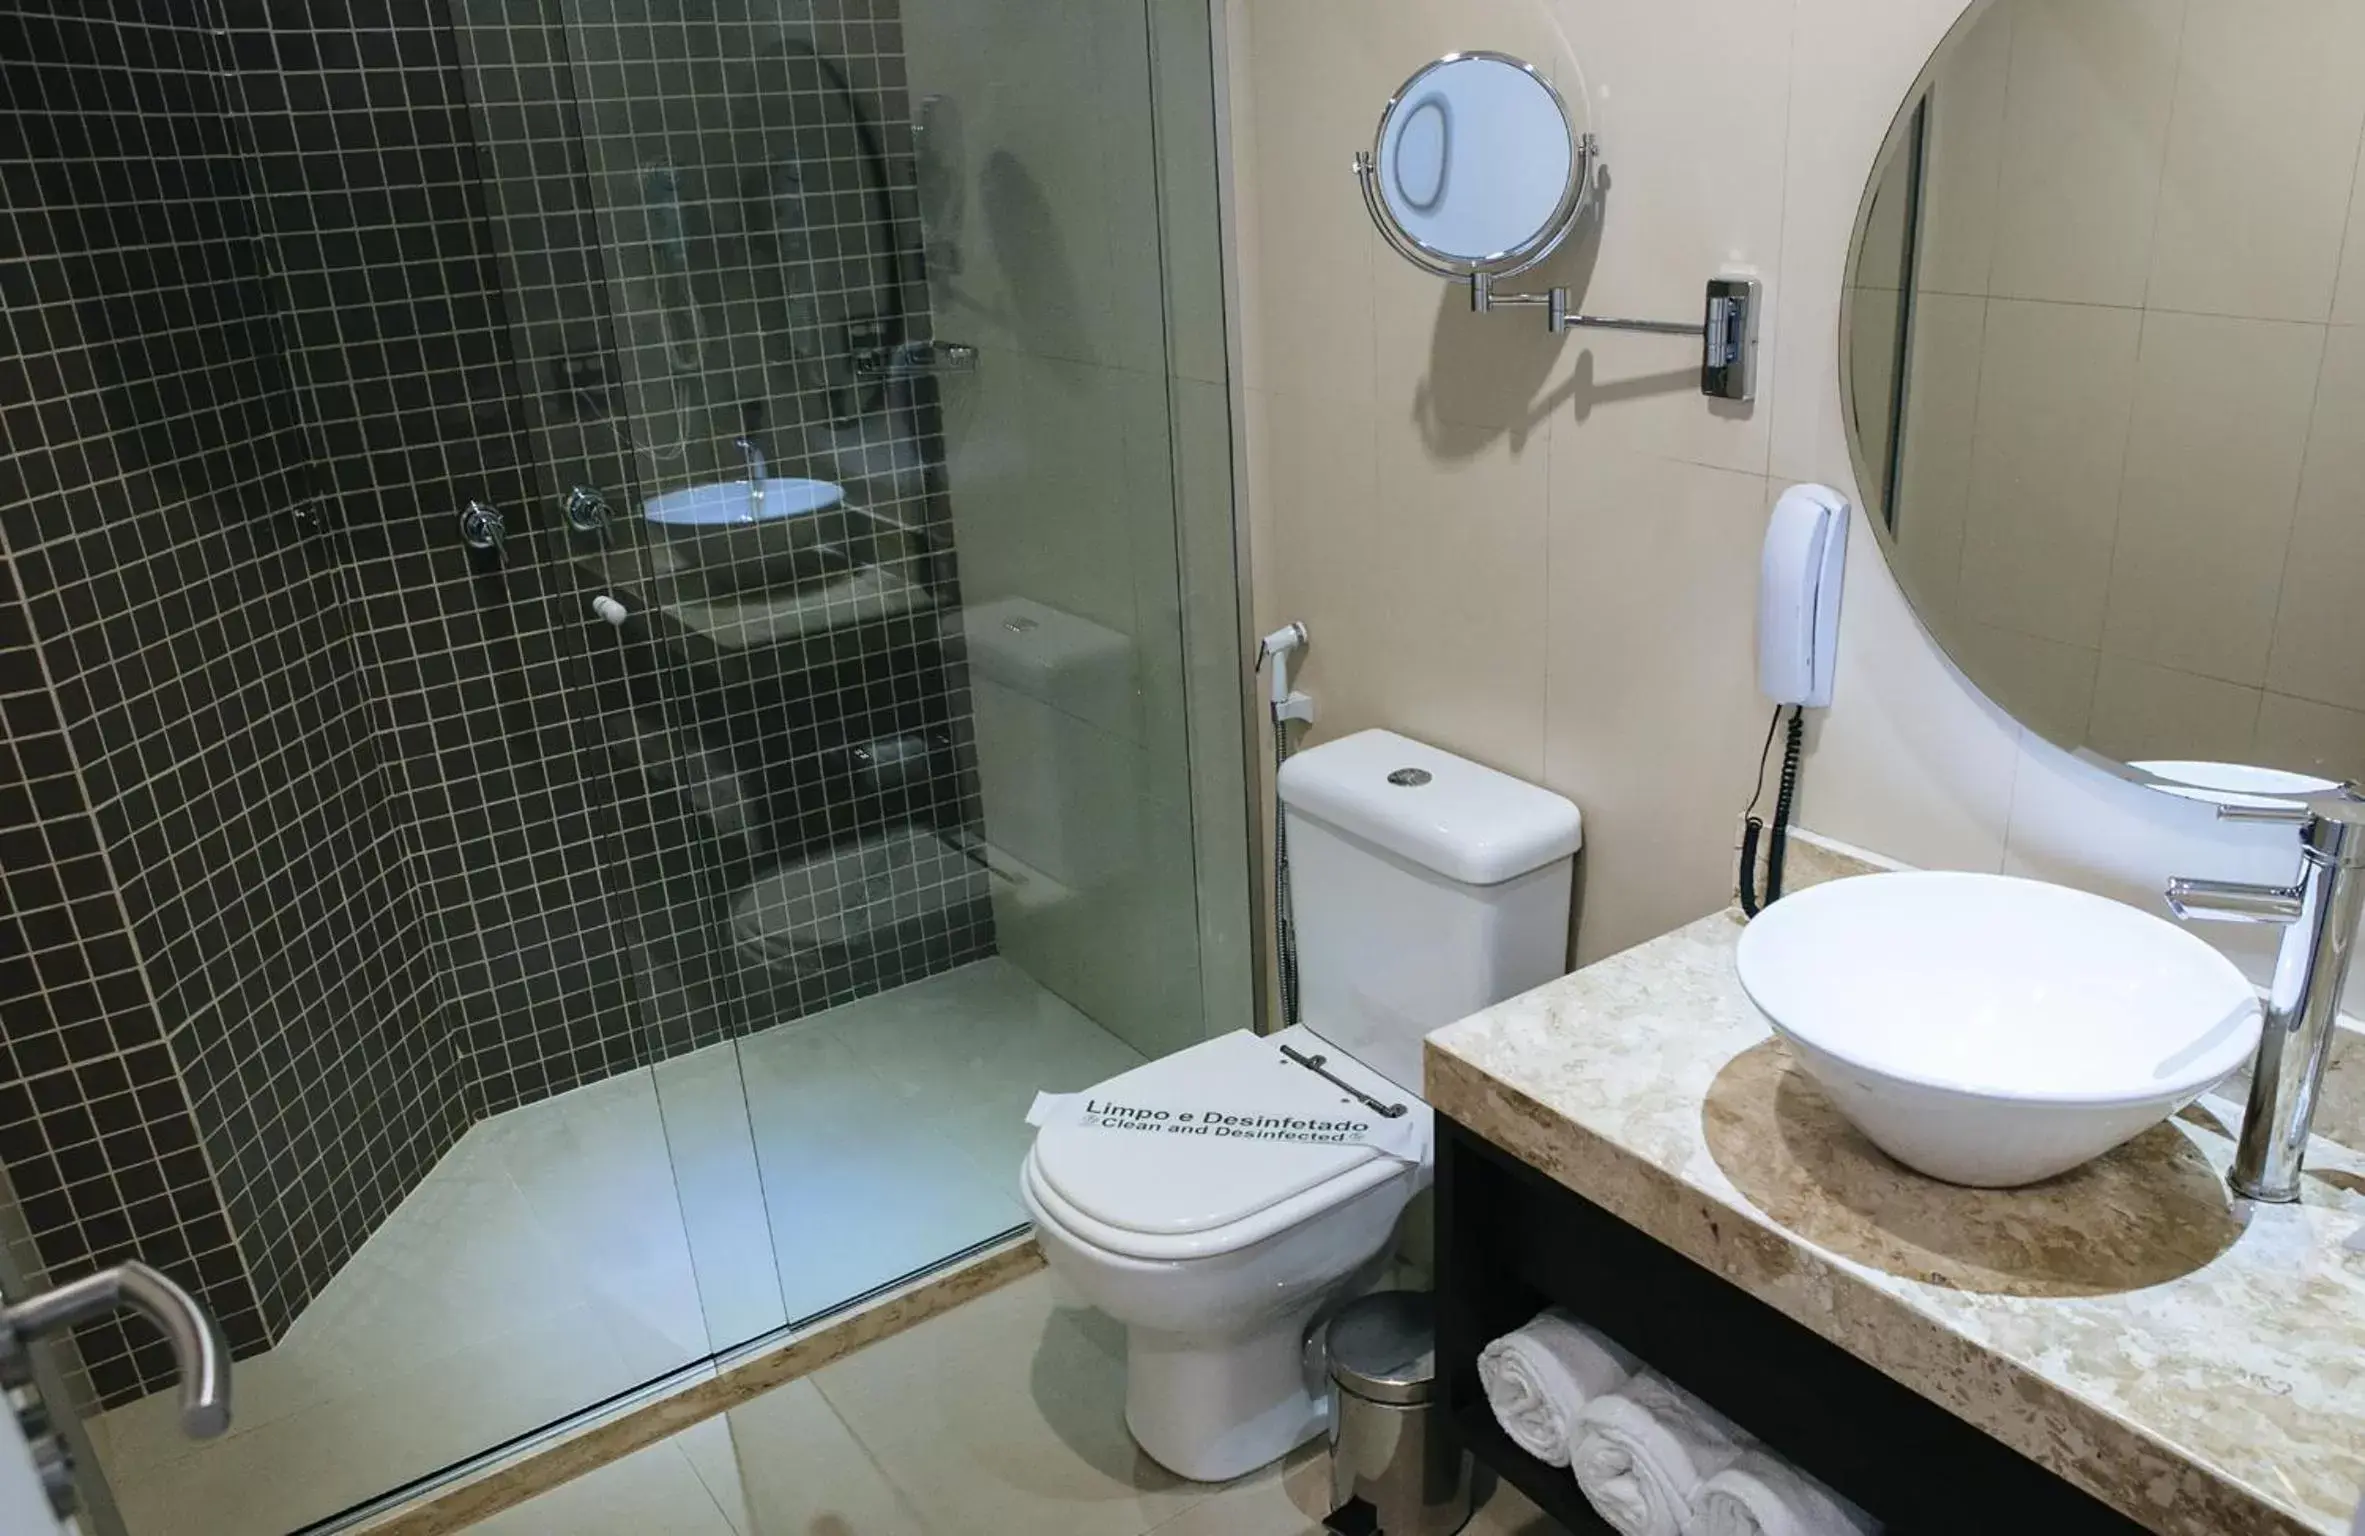 Bathroom in Arosa Rio Hotel